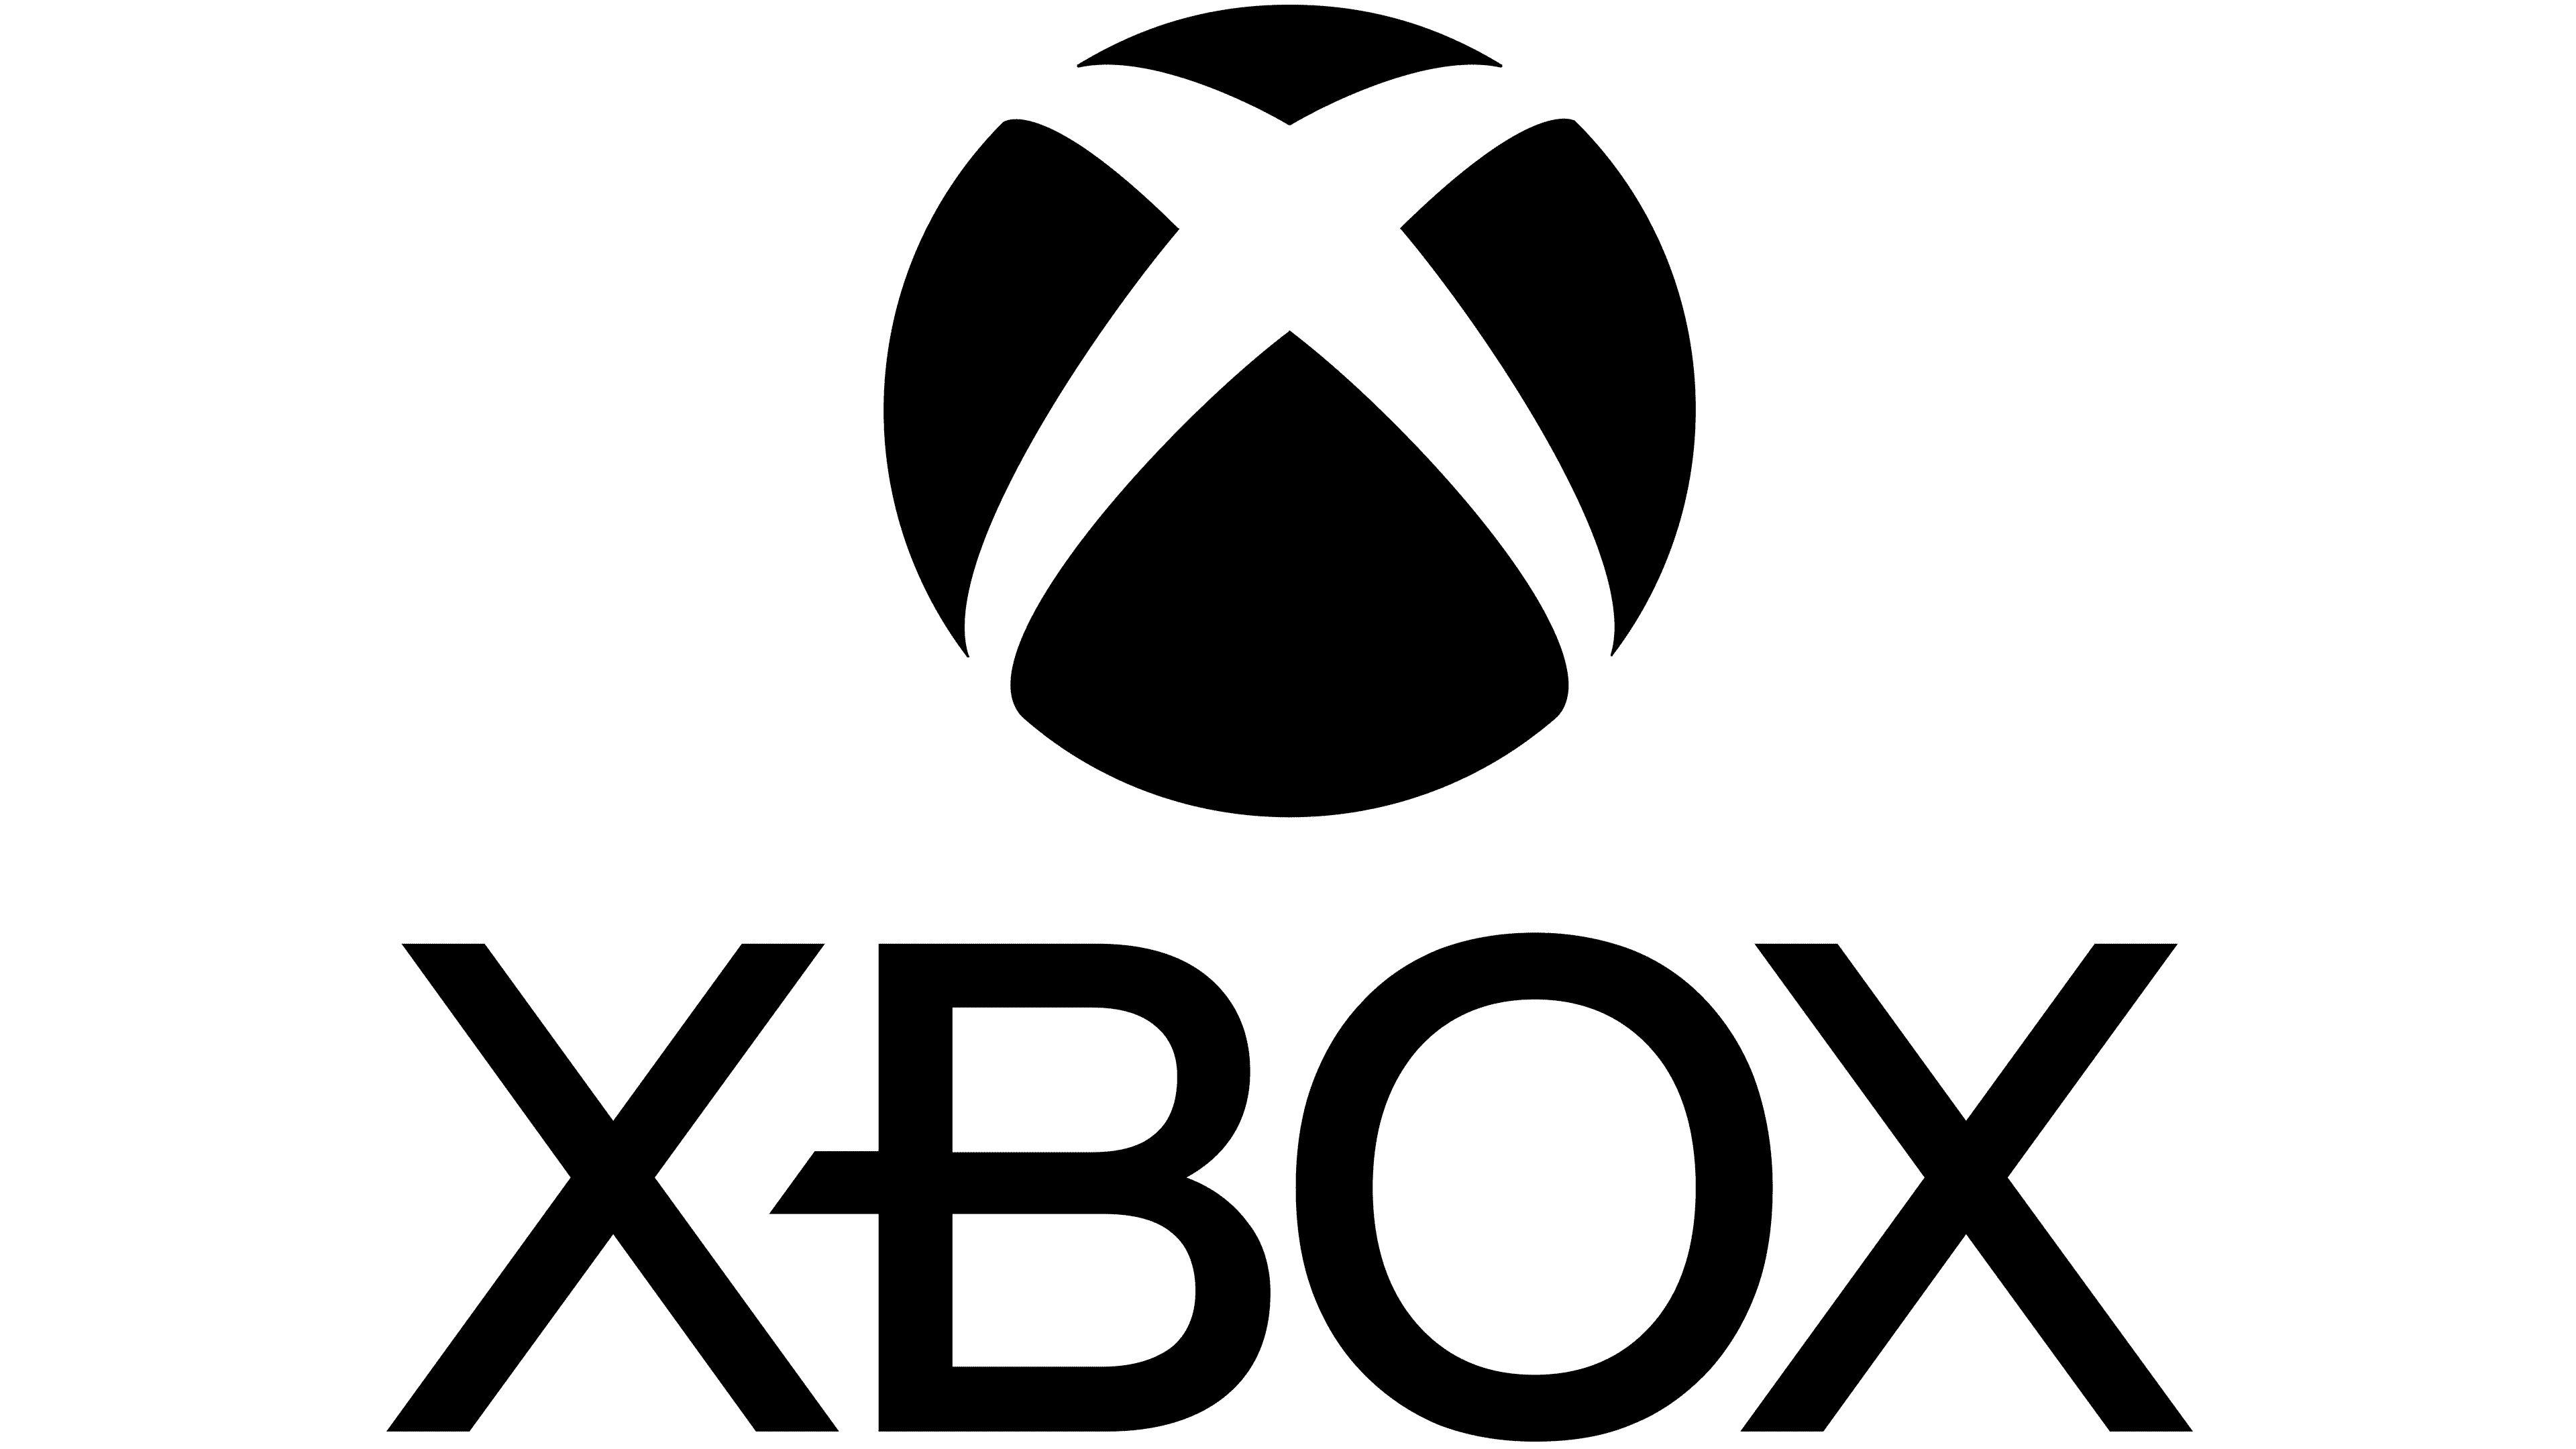 Lịch sử của biểu tượng Xbox đầy thú vị và sẽ khiến bạn ngạc nhiên. Từ năm 2001 đến nay, nó đã trở thành một trong những biểu tượng game được yêu thích nhất trên thị trường. Tìm hiểu thêm về lịch sử của nó và cảm nhận sự khởi đầu một hành trình tuyệt vời.